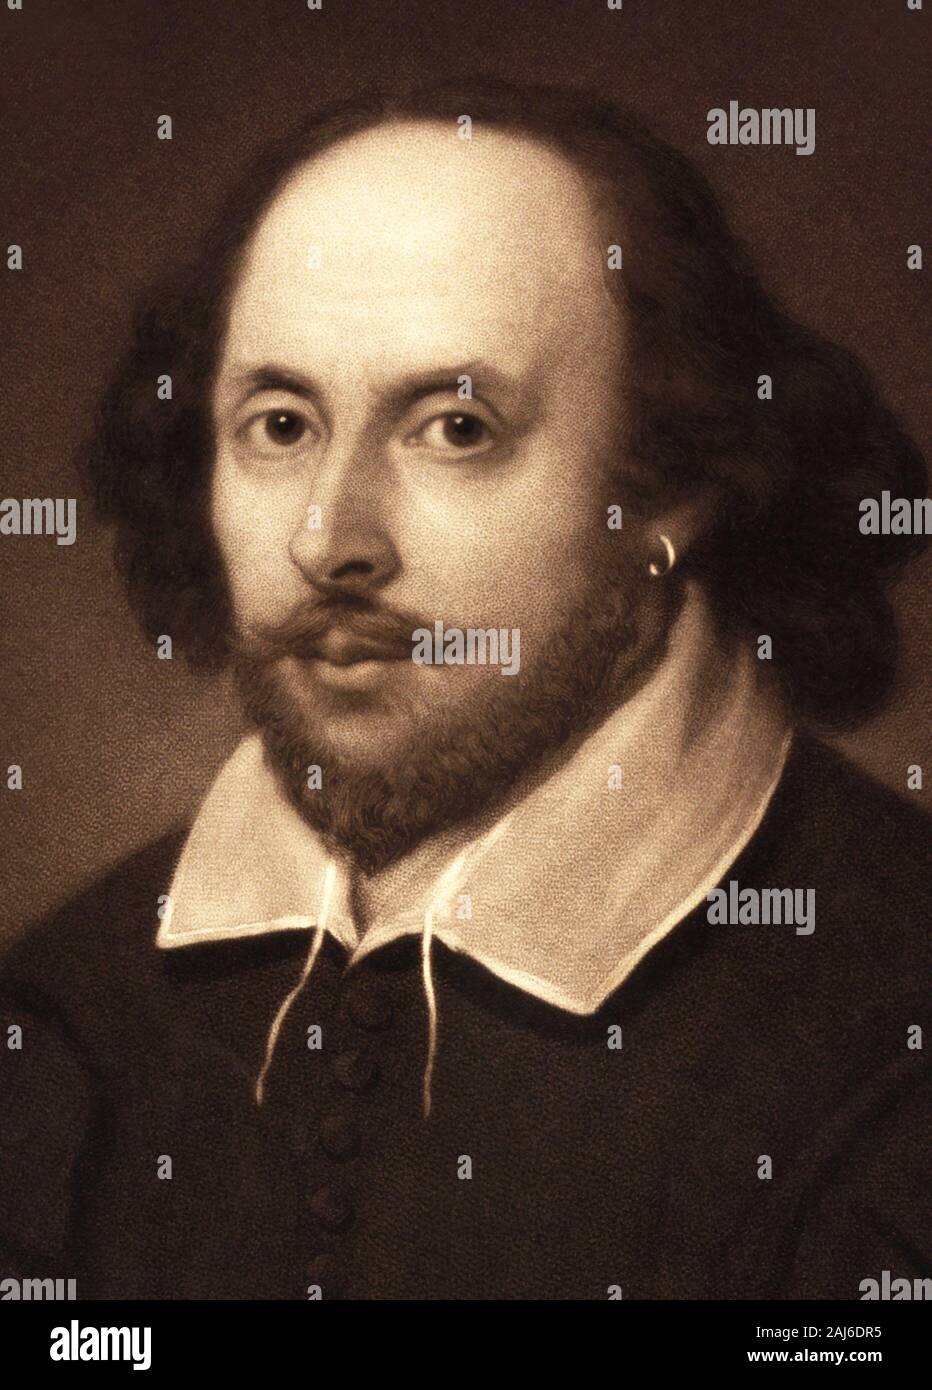 William Shakespeare (1564-1616), dramaturge anglais, poète et acteur, considéré par beaucoup comme le plus grand écrivain de la langue anglaise et le plus grand dramaturge. Banque D'Images